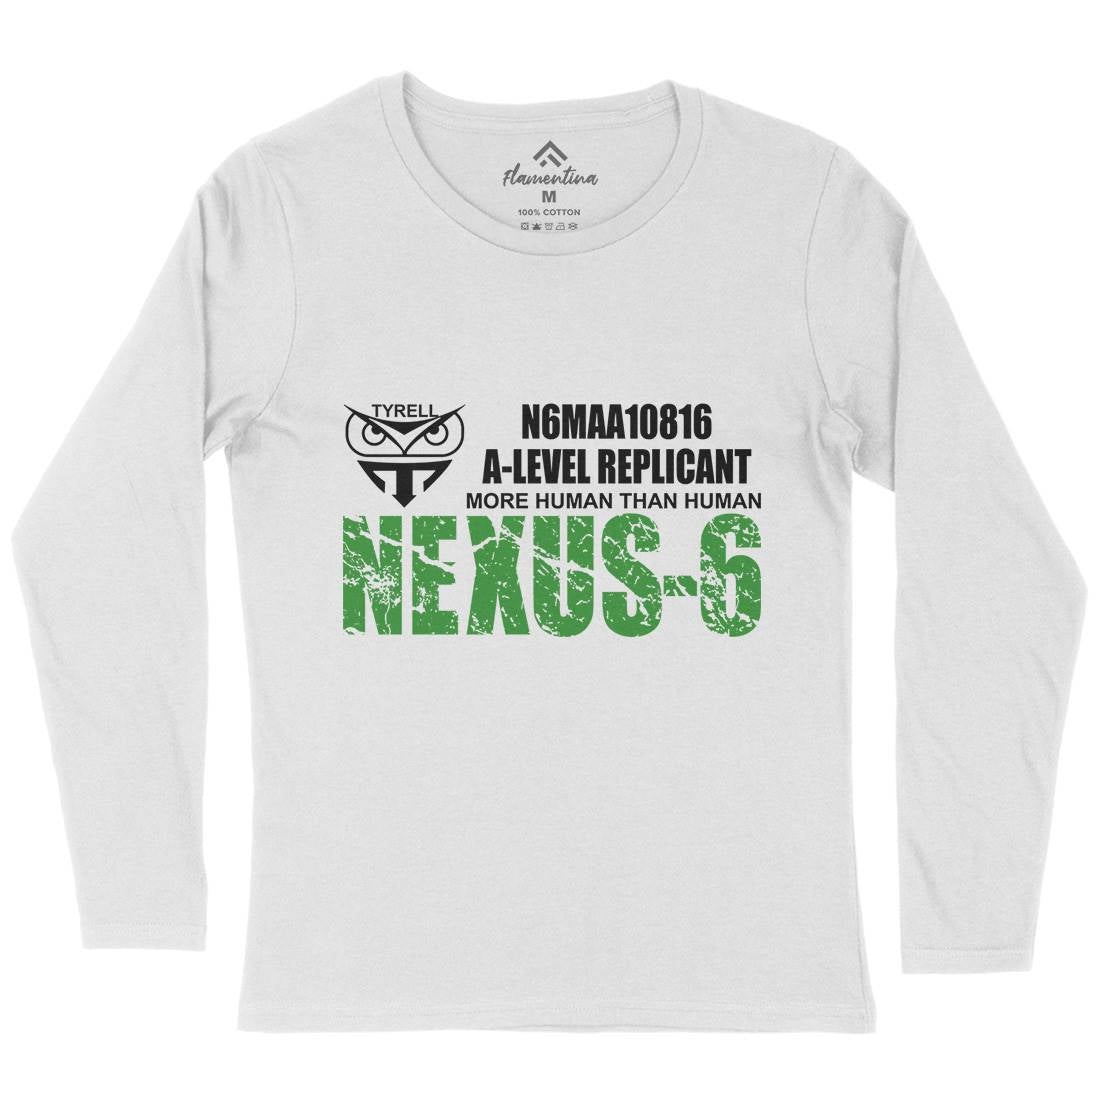 Nexus-6 Womens Long Sleeve T-Shirt Space D434